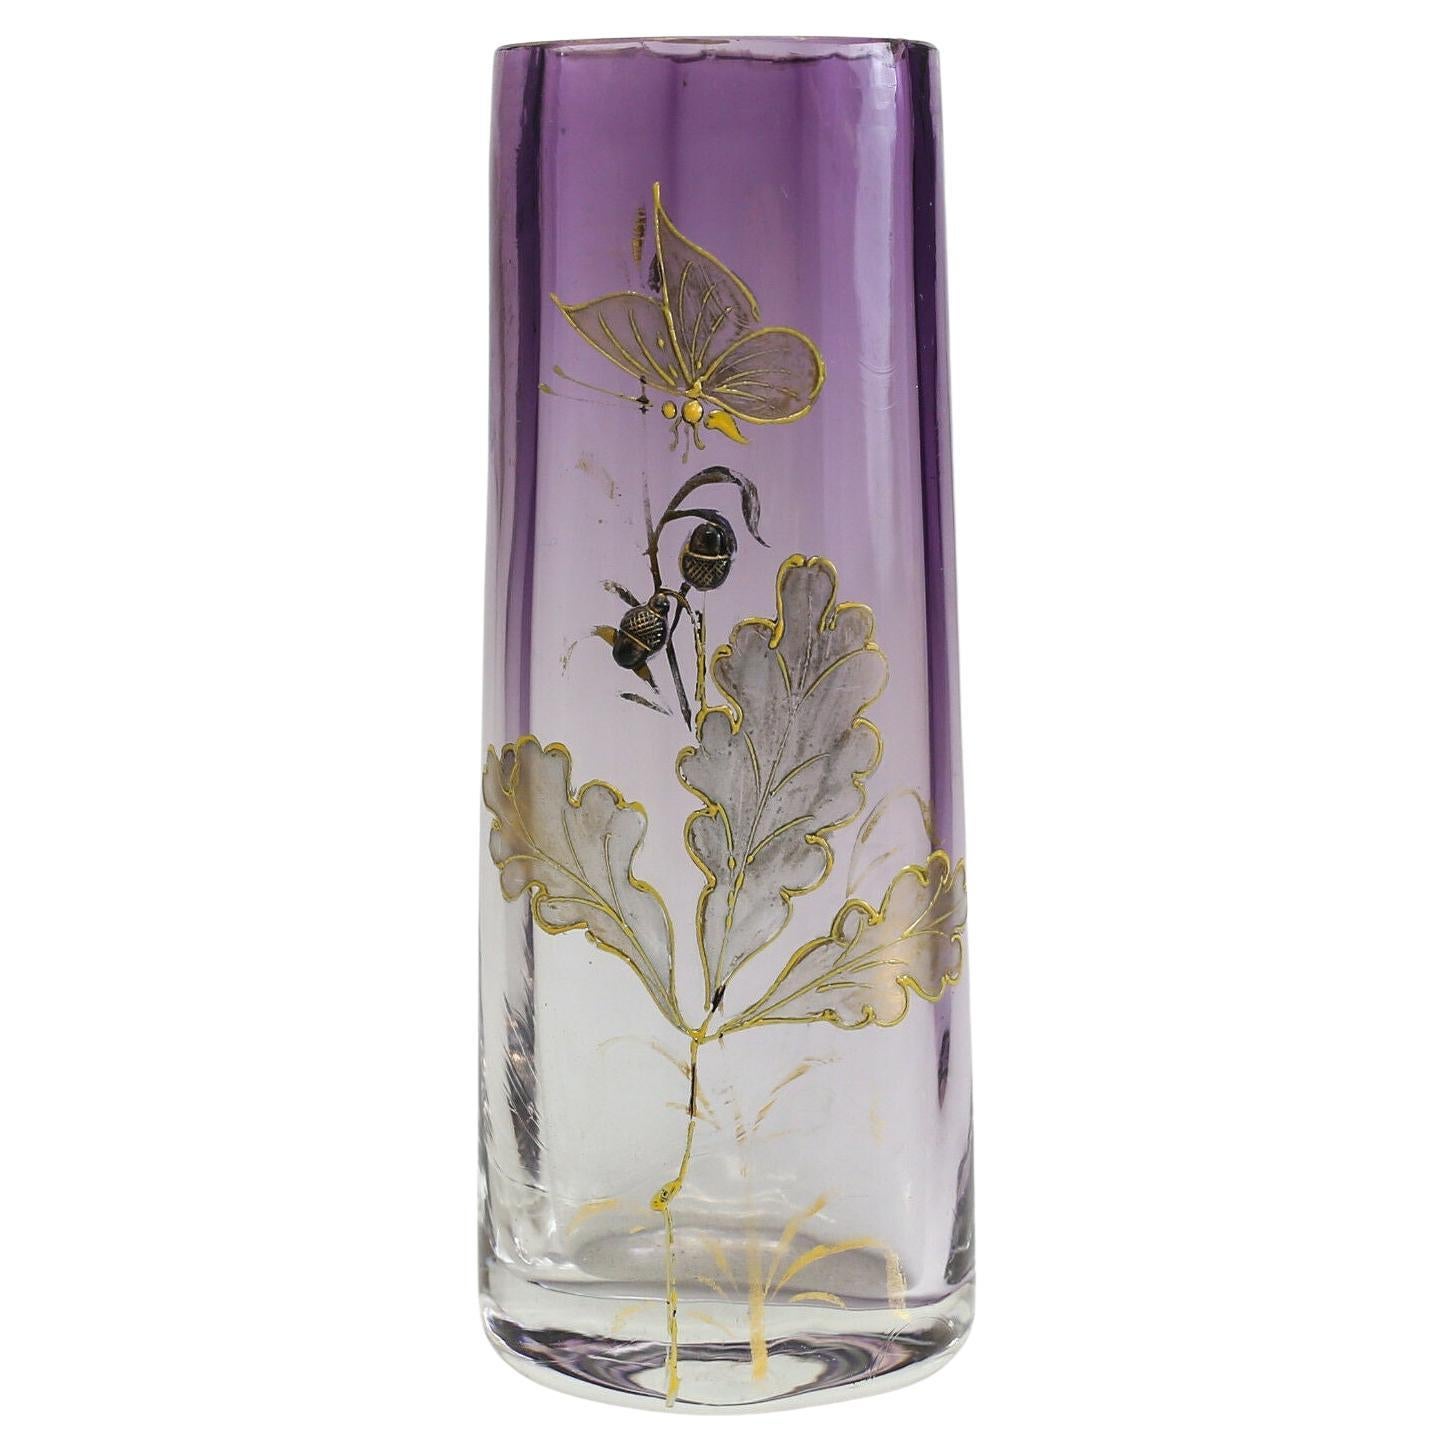 Moser Art Glass Raised Gold Gilt Vase Amethyst Clear Raised Leaves Butterflies